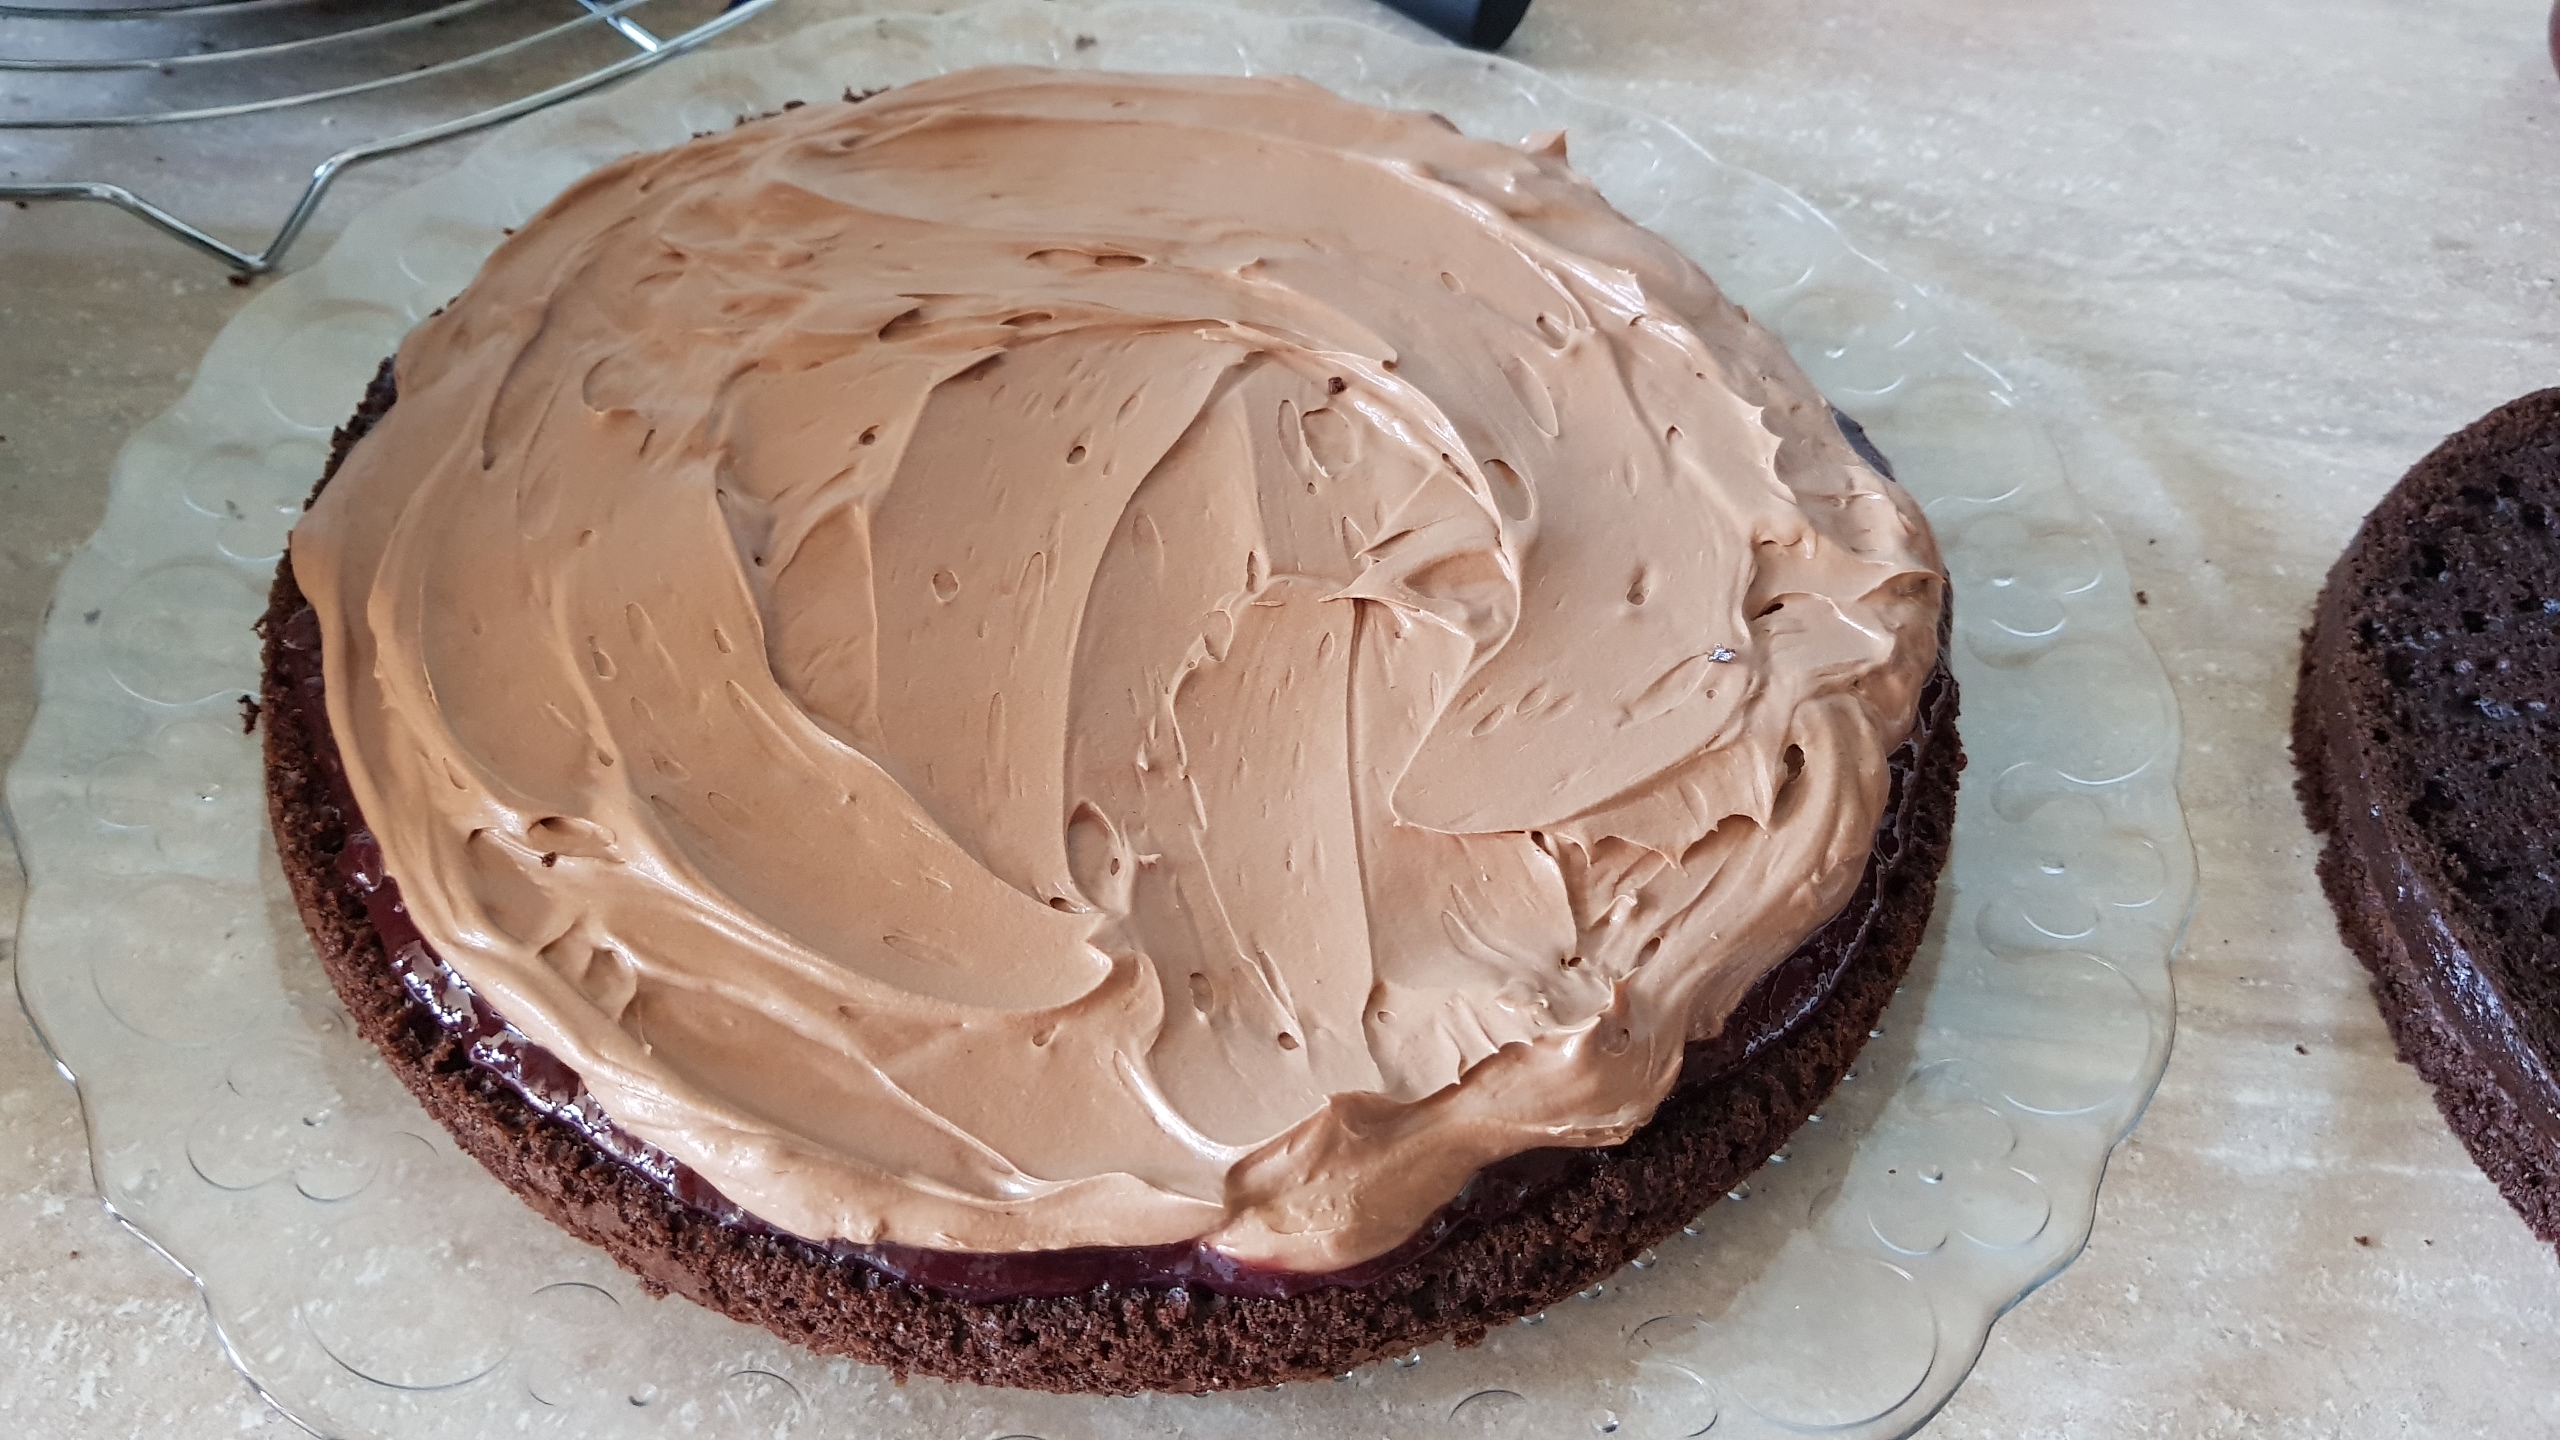 Desert tort cu crema de ciocolata si gem de zmeura - reteta nr. 900